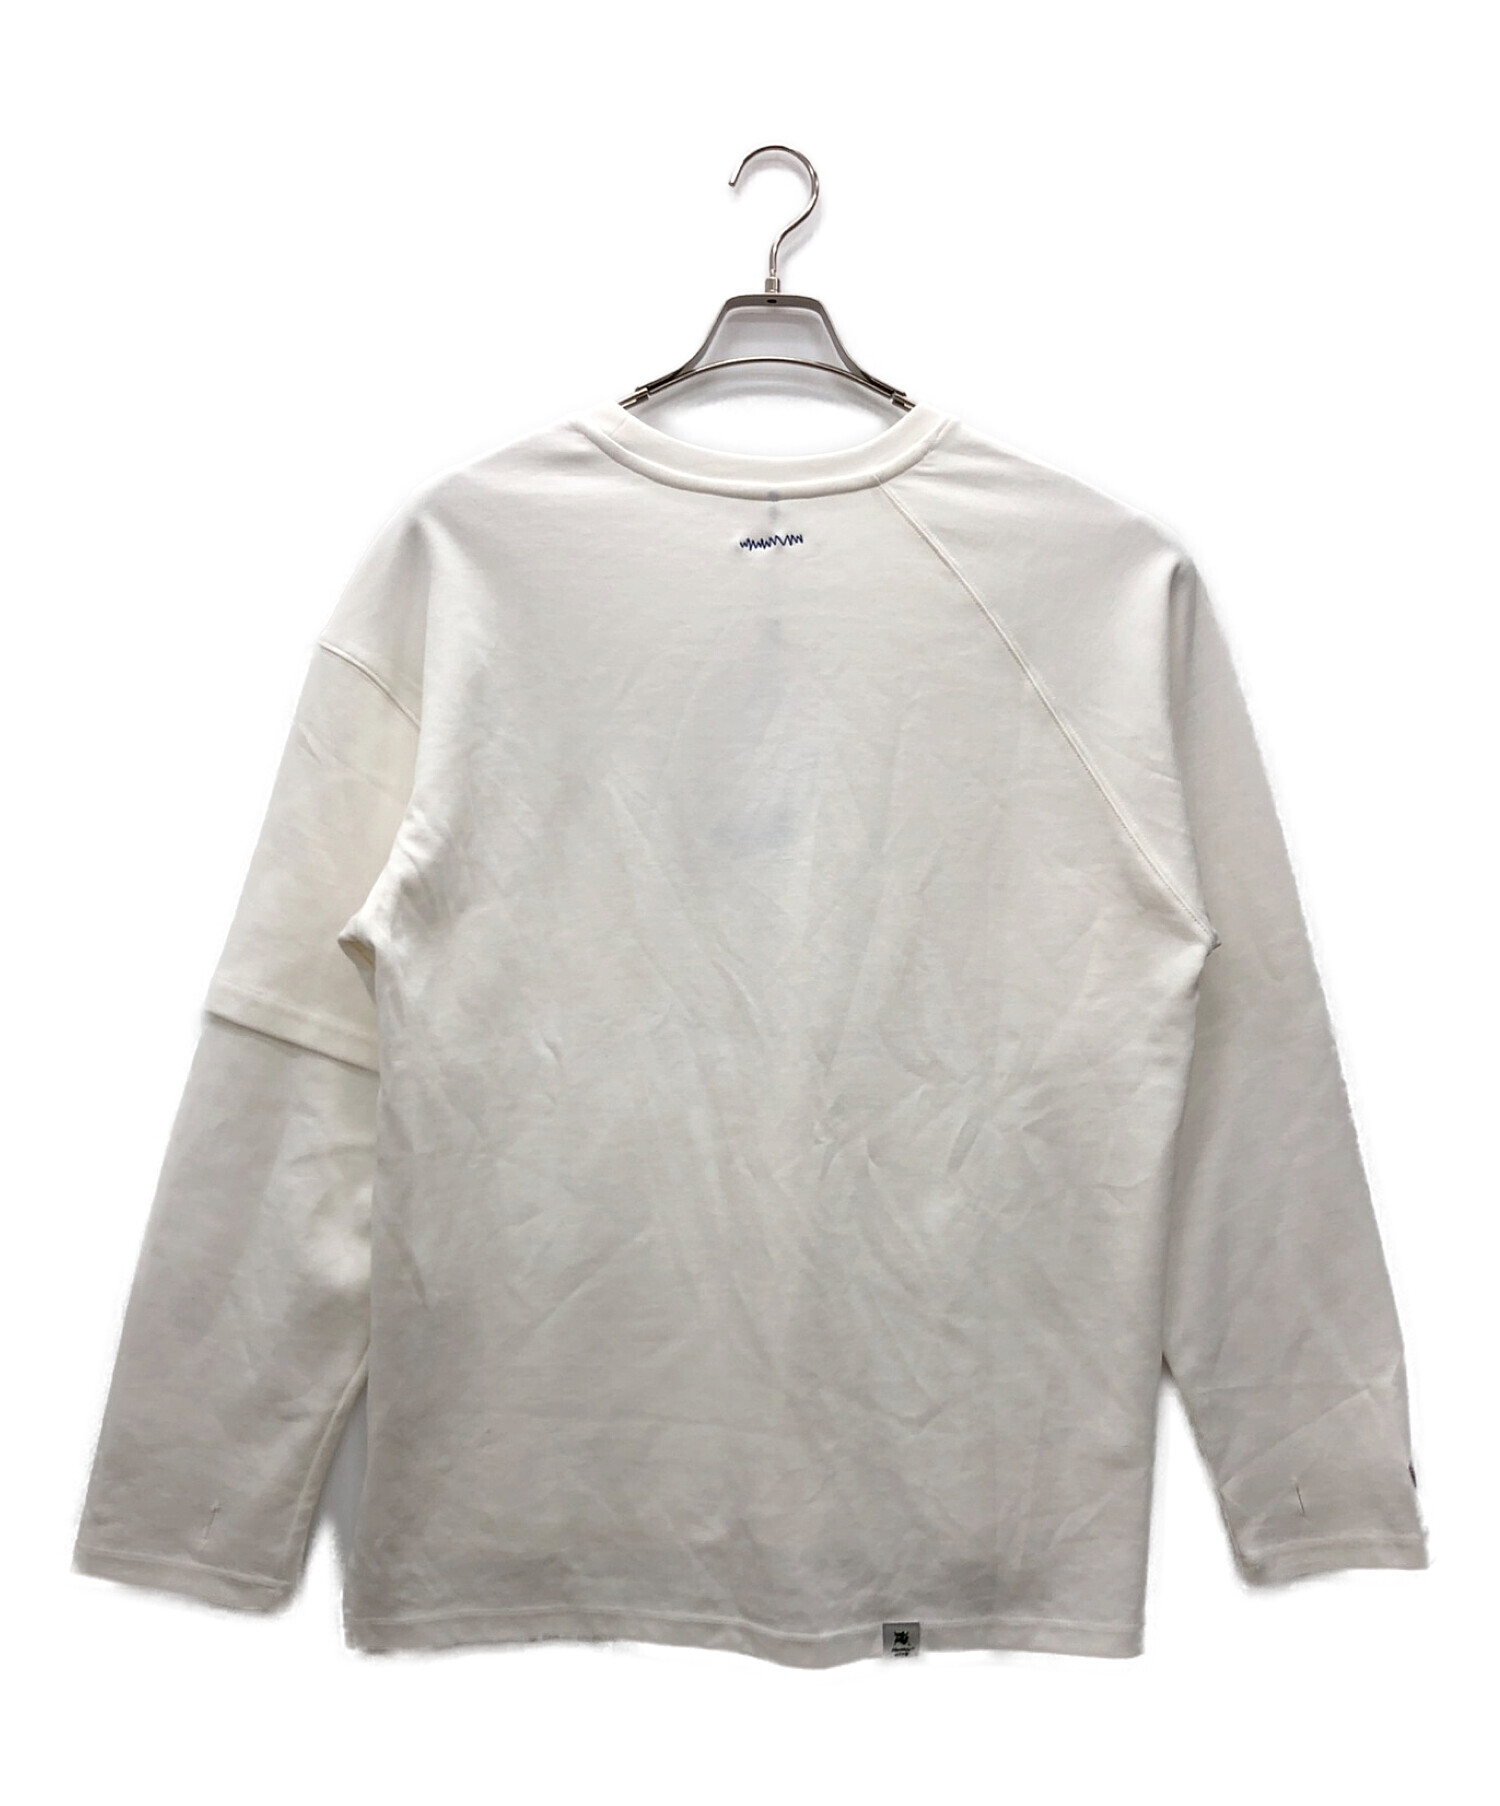 ADER error (アーダーエラー) ロングスリーブTシャツ ホワイト サイズ:3 未使用品